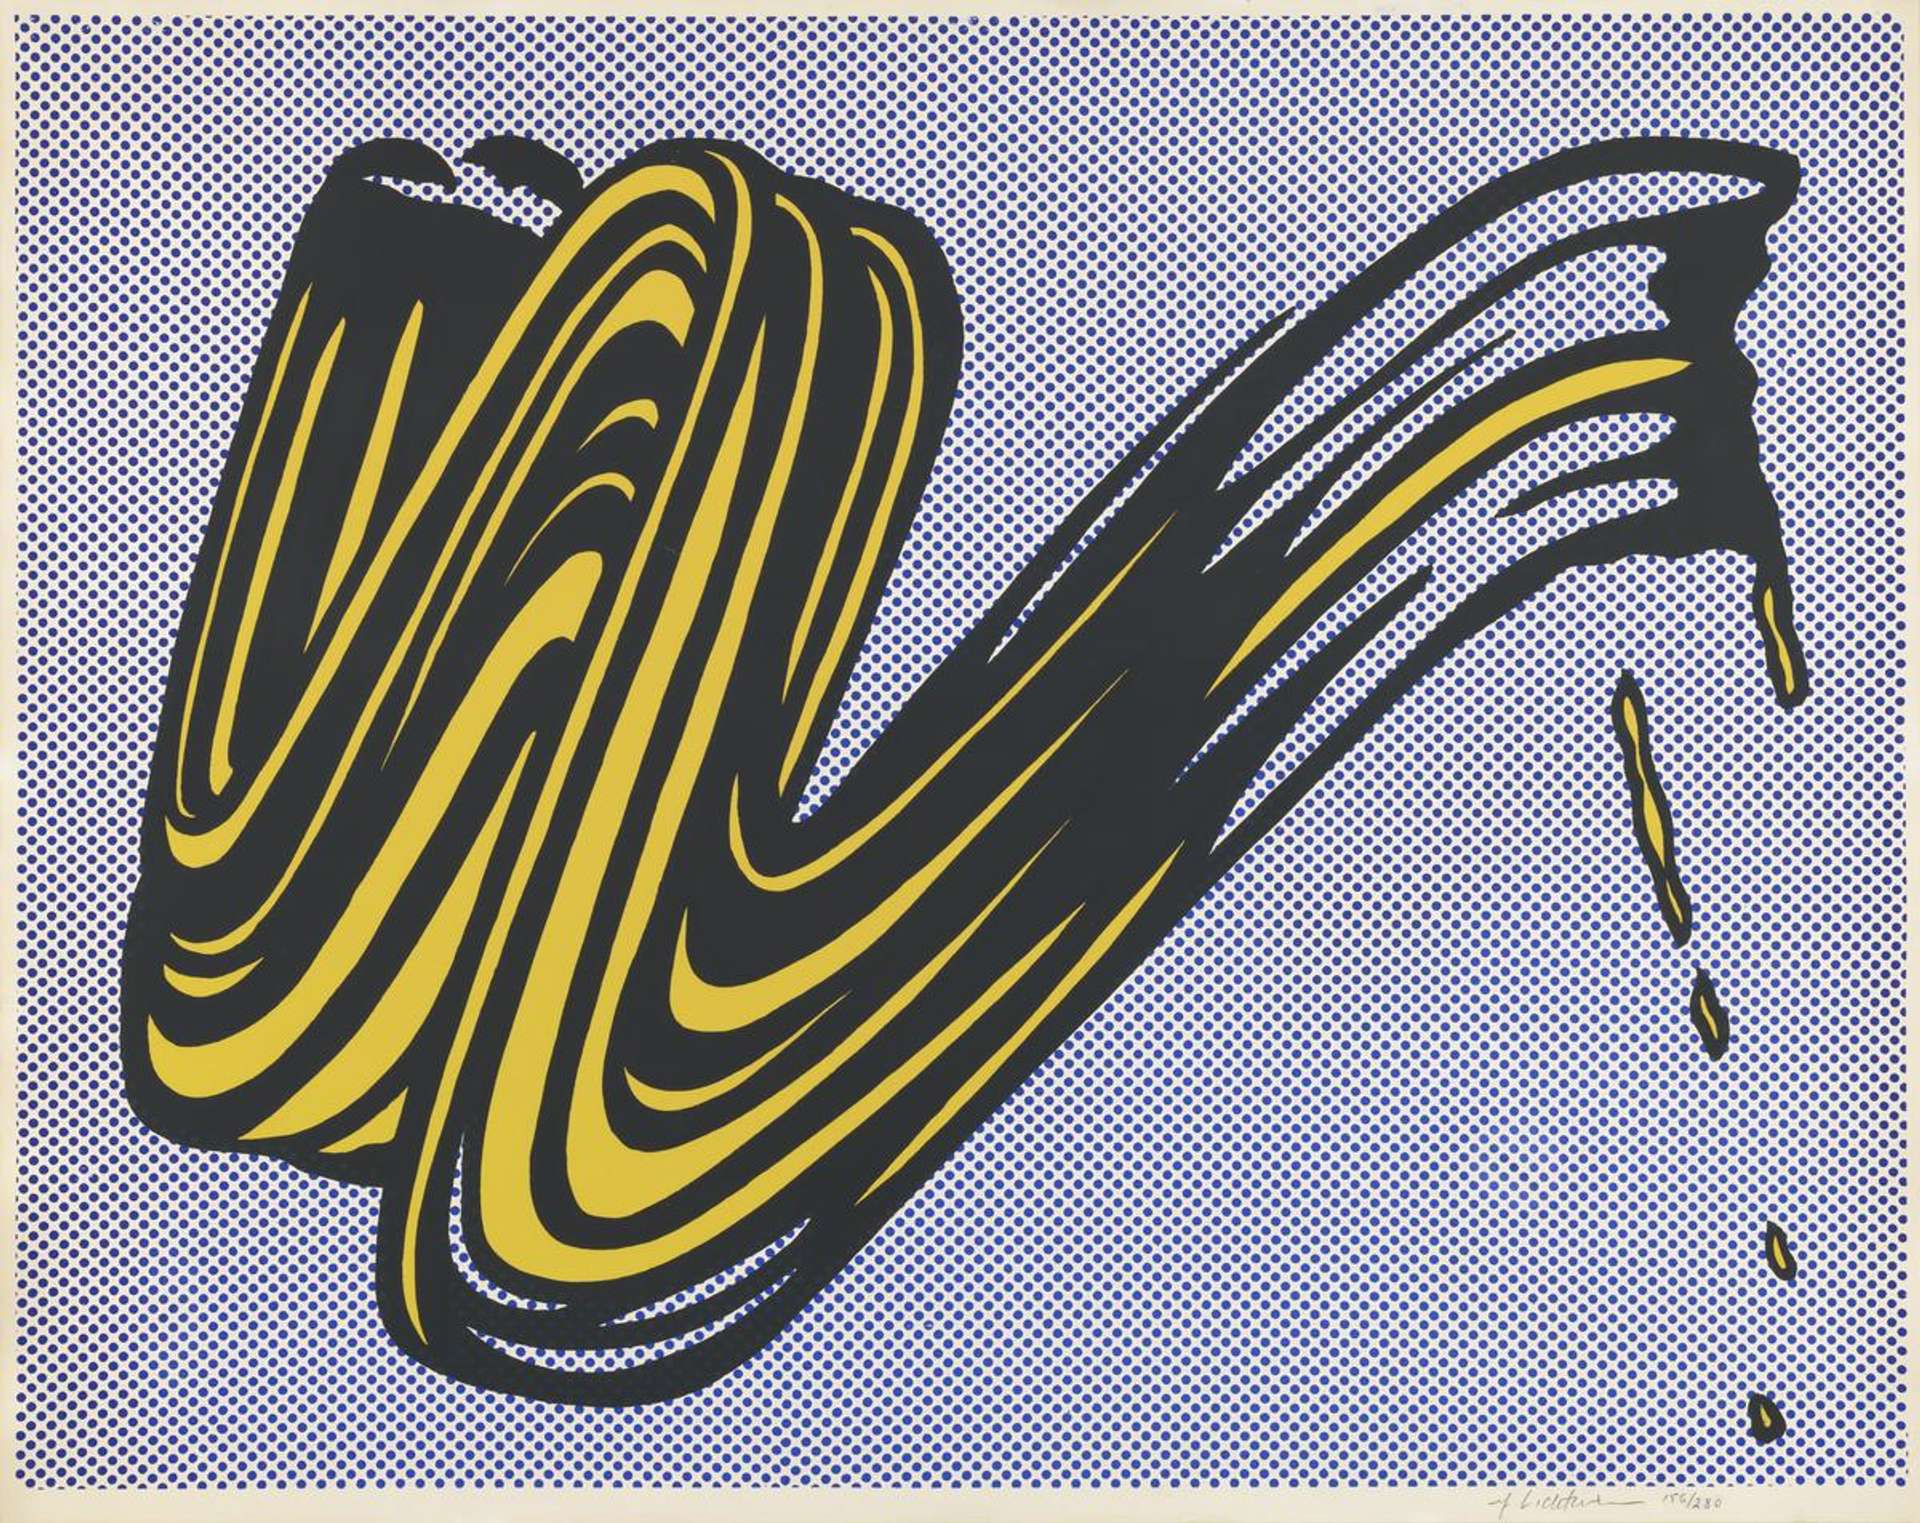 Roy Lichtenstein's 'Brushstrokes': A Transformative Series in the Pop Art Era